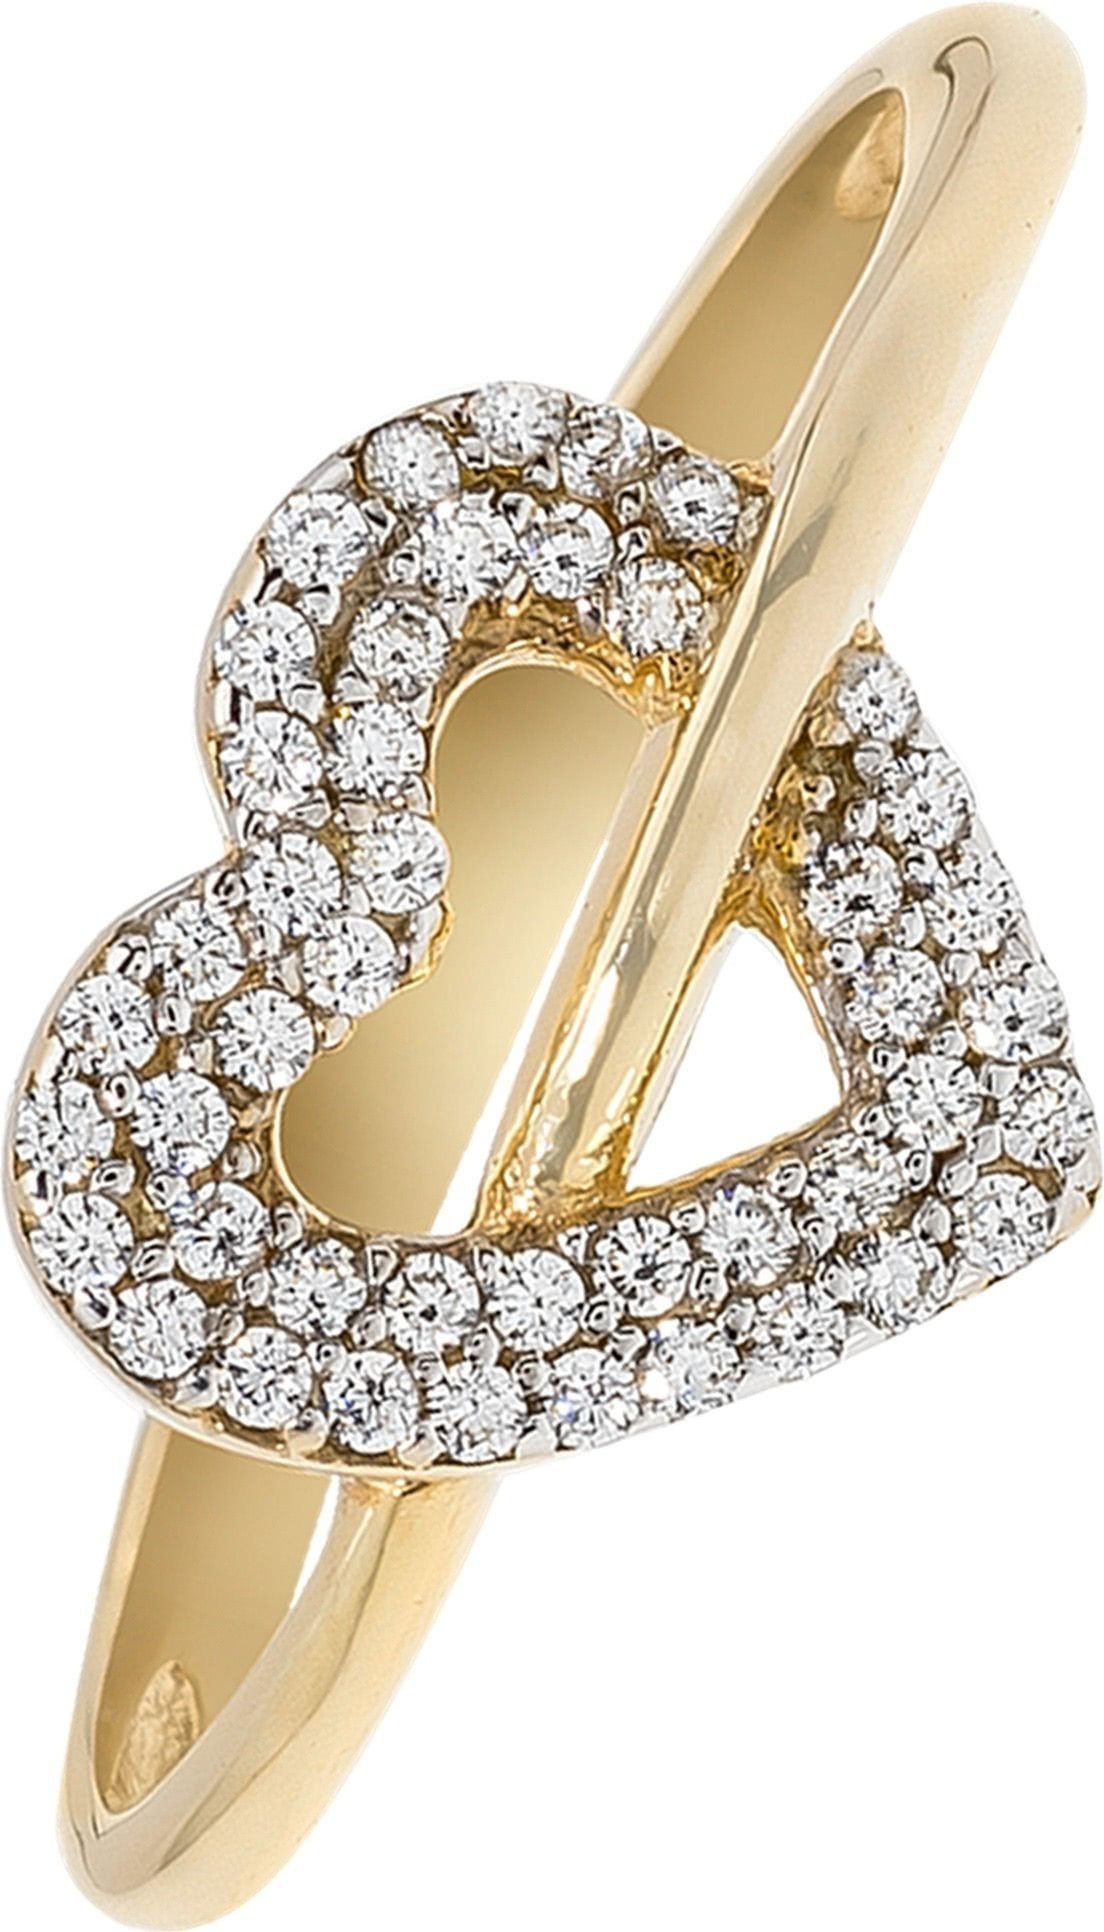 Balia Goldring Balia Ring für Damen 8K Gold 333 (Fingerring), Fingerring Größe 58 (18,4), 333 Gelbgold - 8 Karat (Herz gold) Gold 33